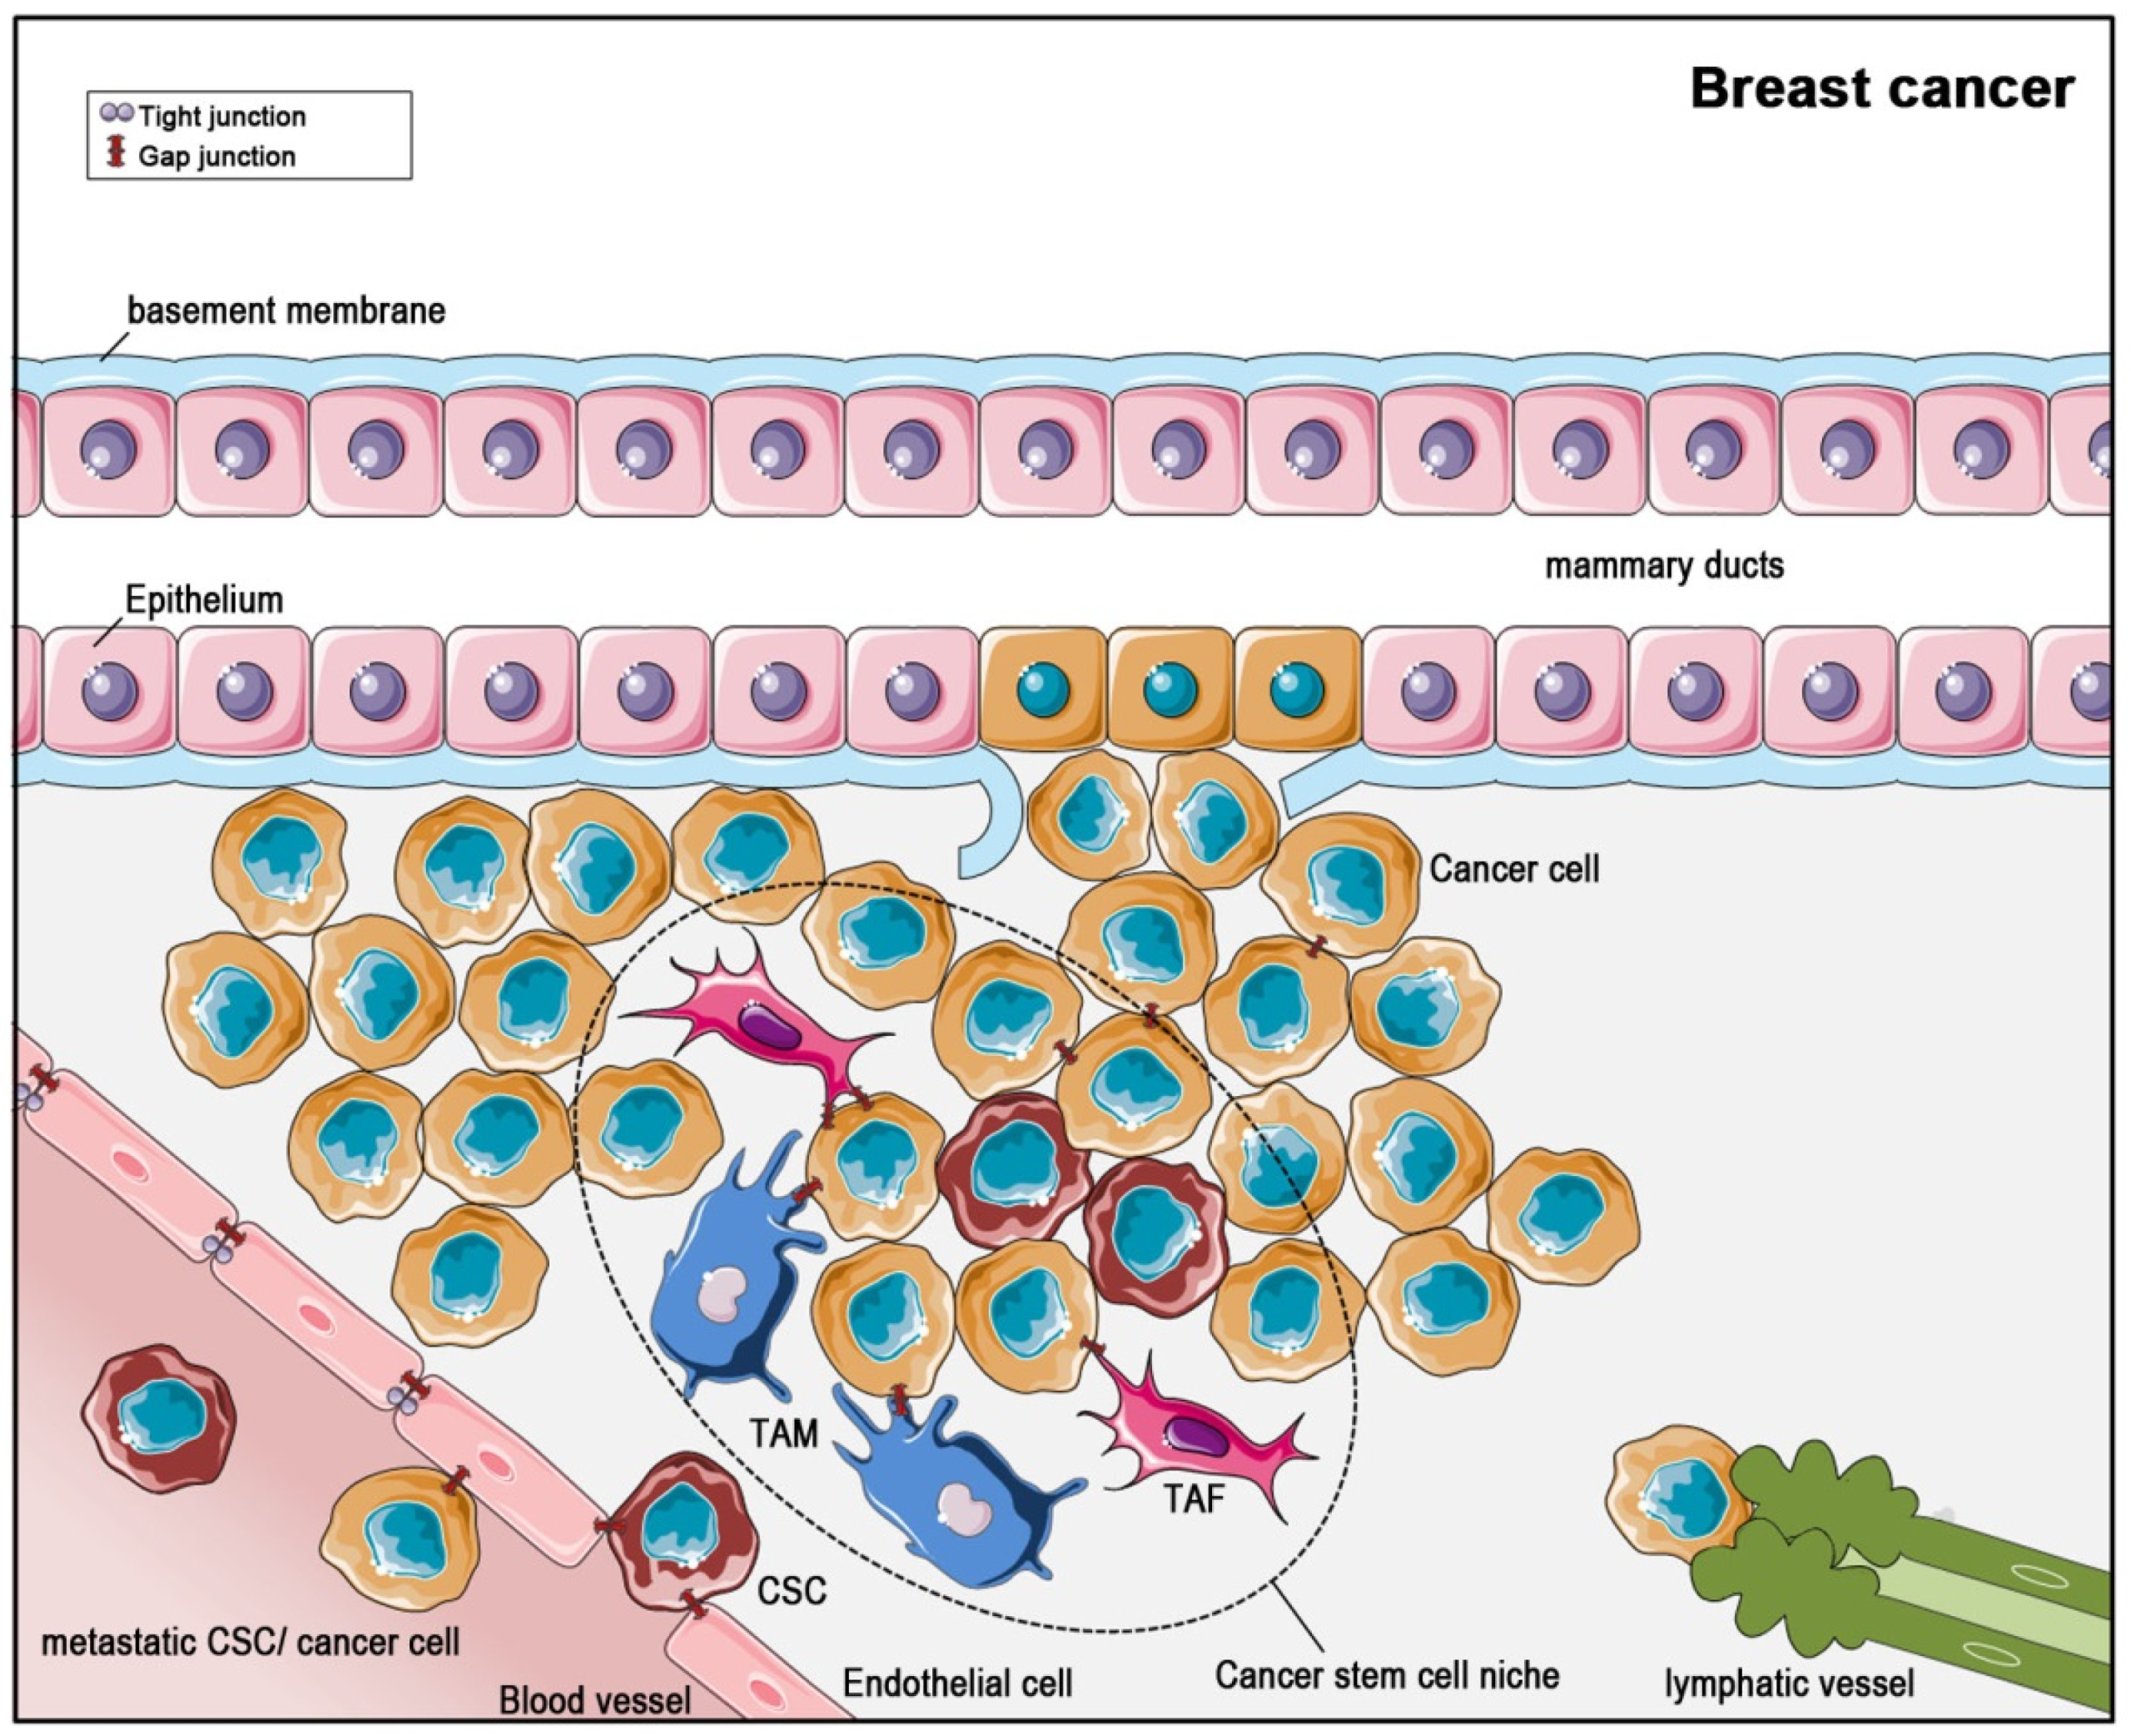 benign cancer stem cells